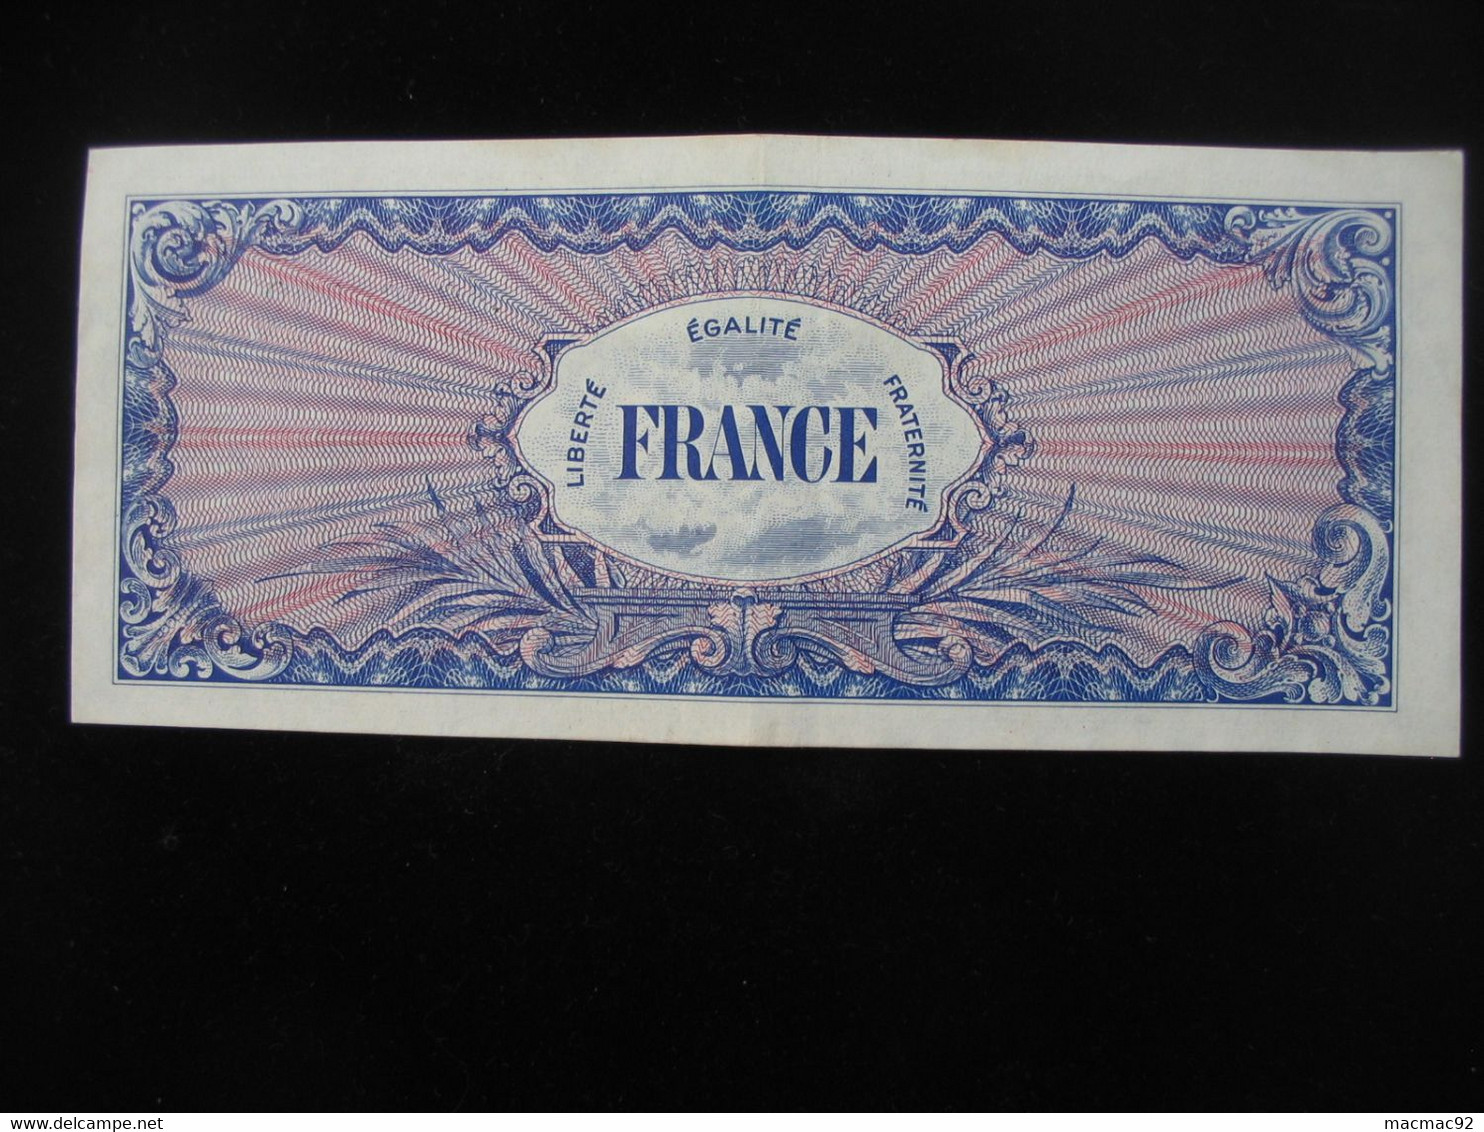 100 Francs - FRANCE - Série 4 - Billet Du Débarquement - Série De 1944 **** EN ACHAT IMMEDIAT ****. - 1945 Verso France